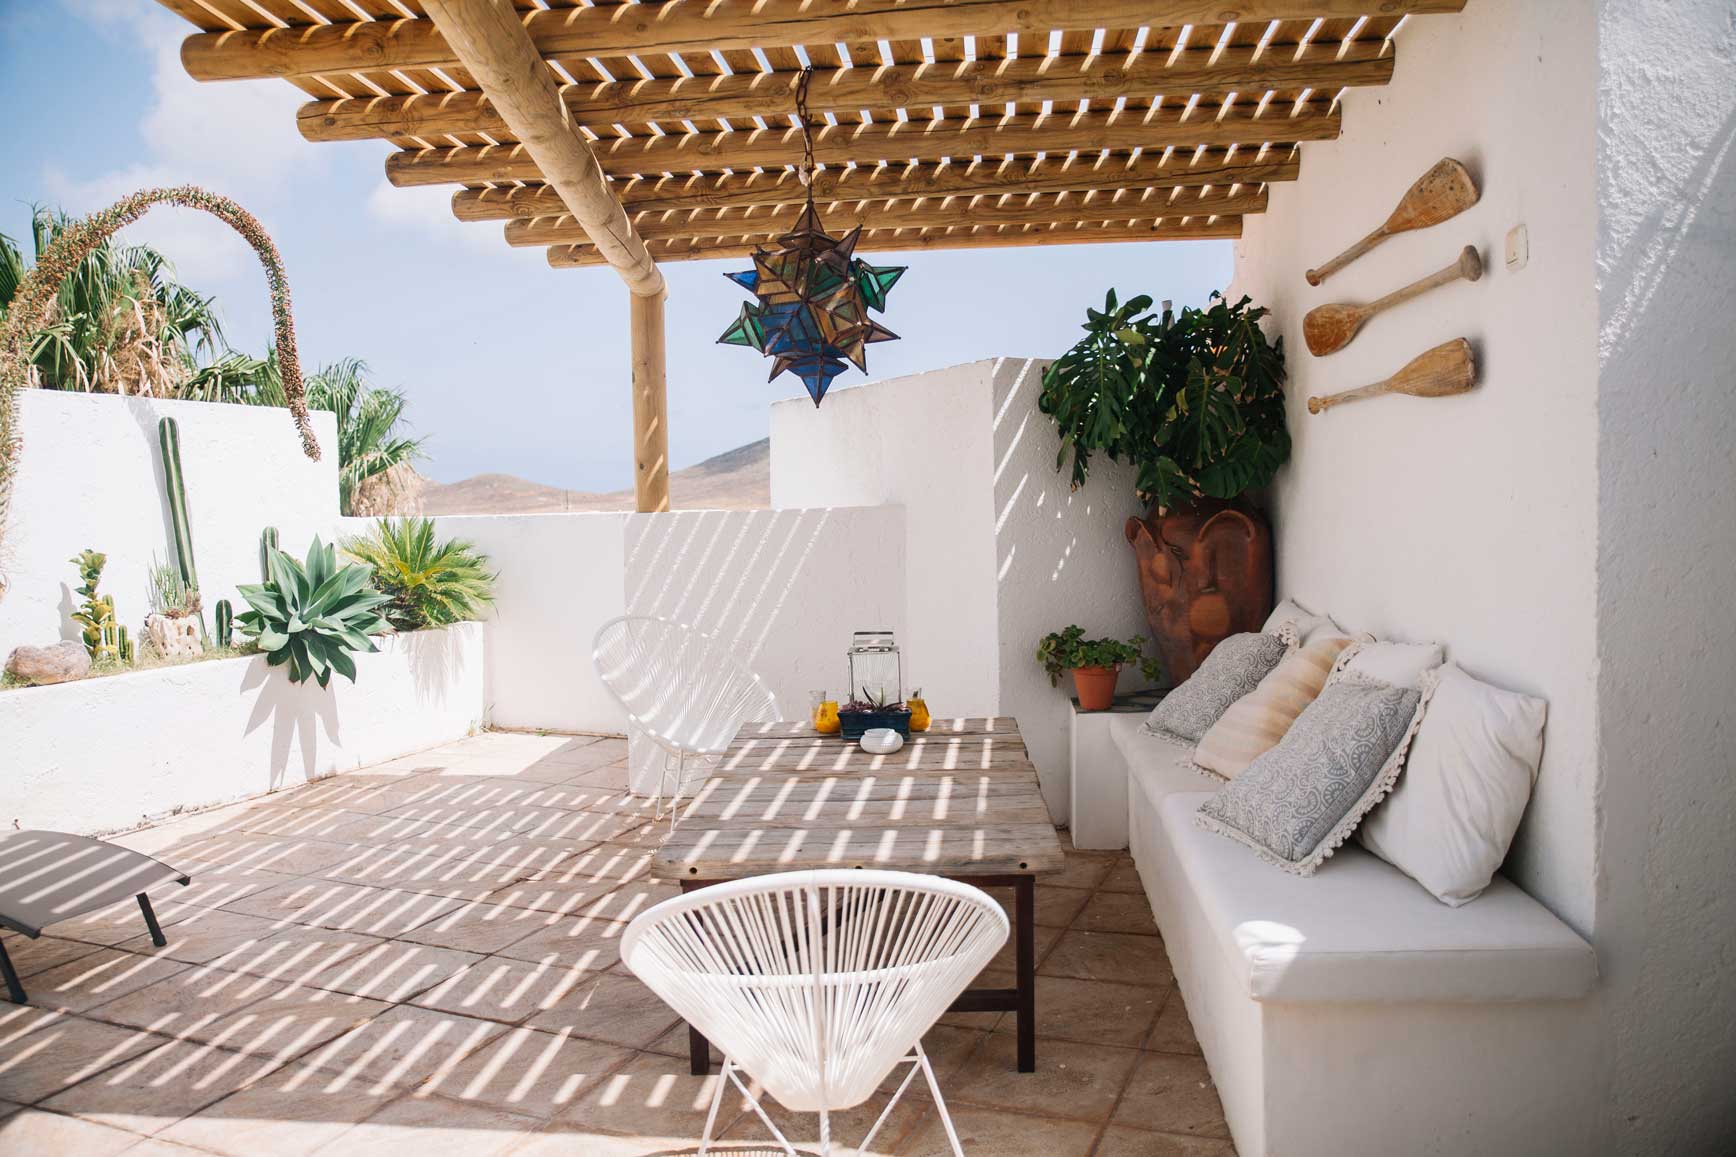 Alojamiento Cabo de Gata - Airbnb_claraBmartin_04